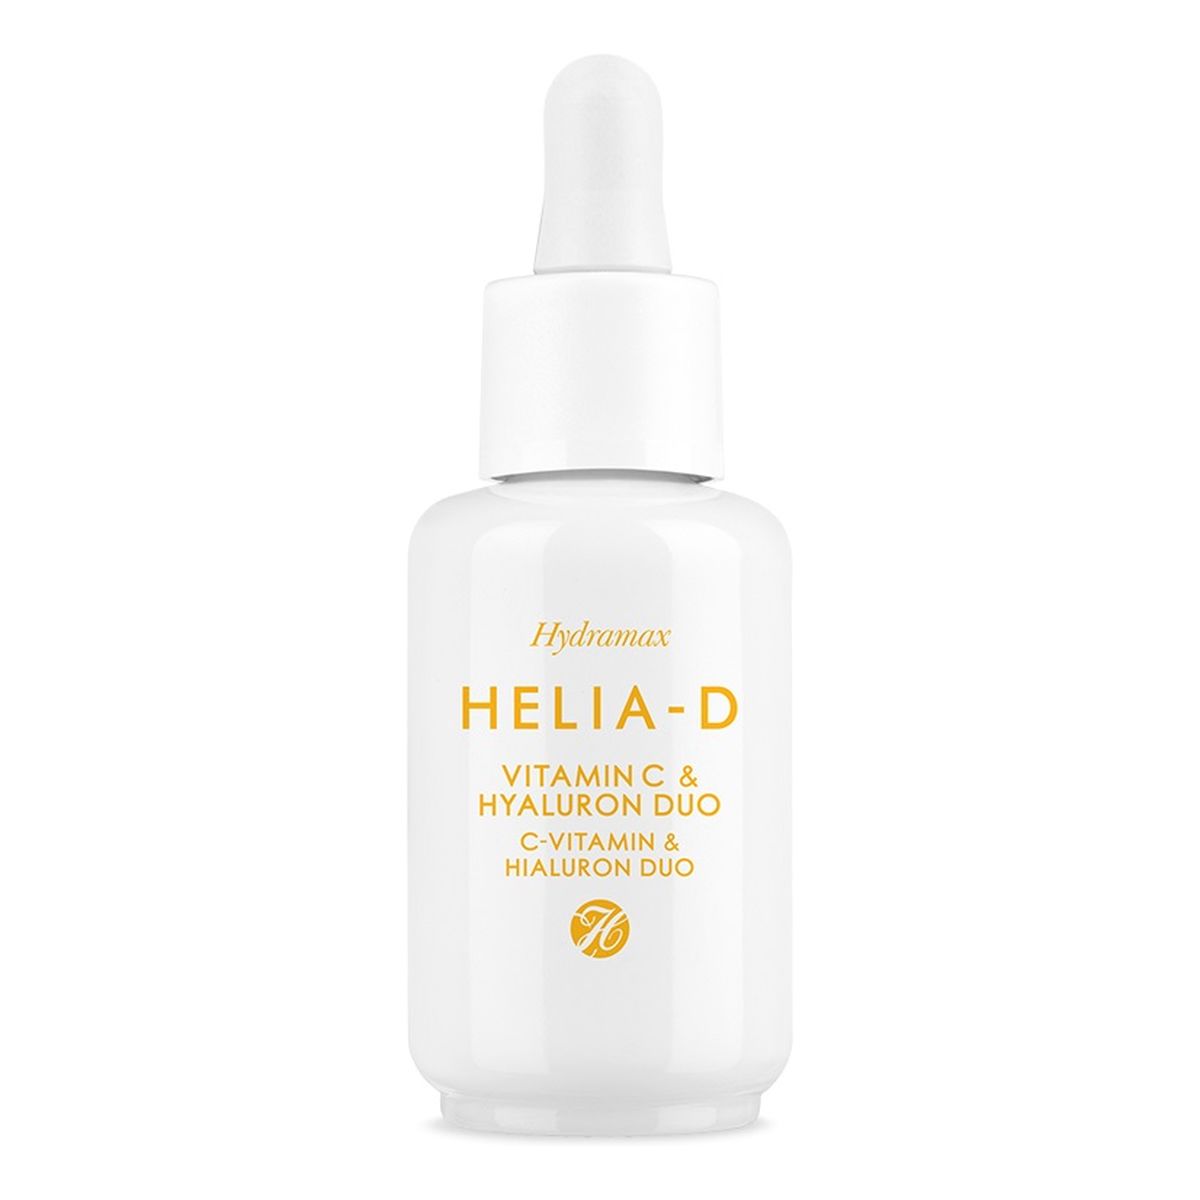 Helia-D Hydramax c-vitamin & hialuron duo serum do twarzy z witaminą c i kwasem hialuronowym 30ml